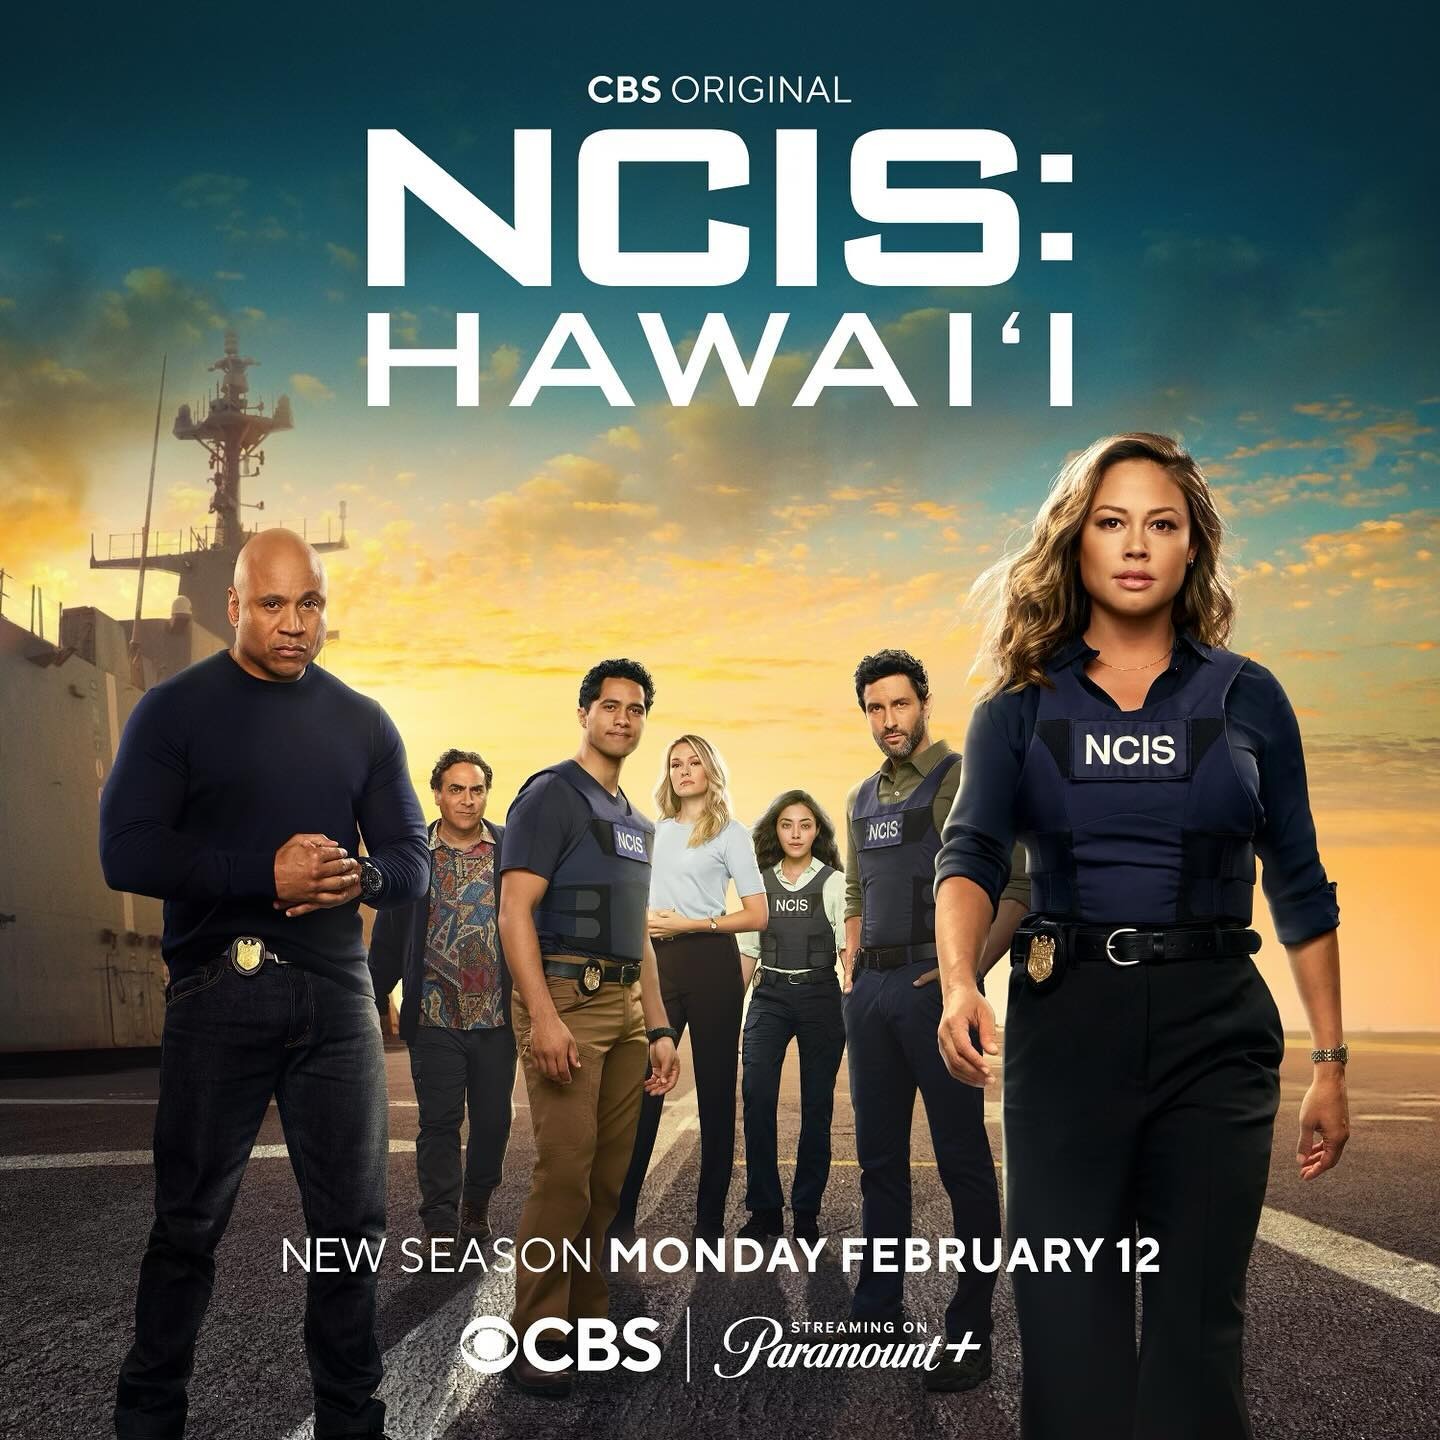 NCIS: Hawai'i (#3 of 3): Extra Large TV Poster Image - IMP Awards